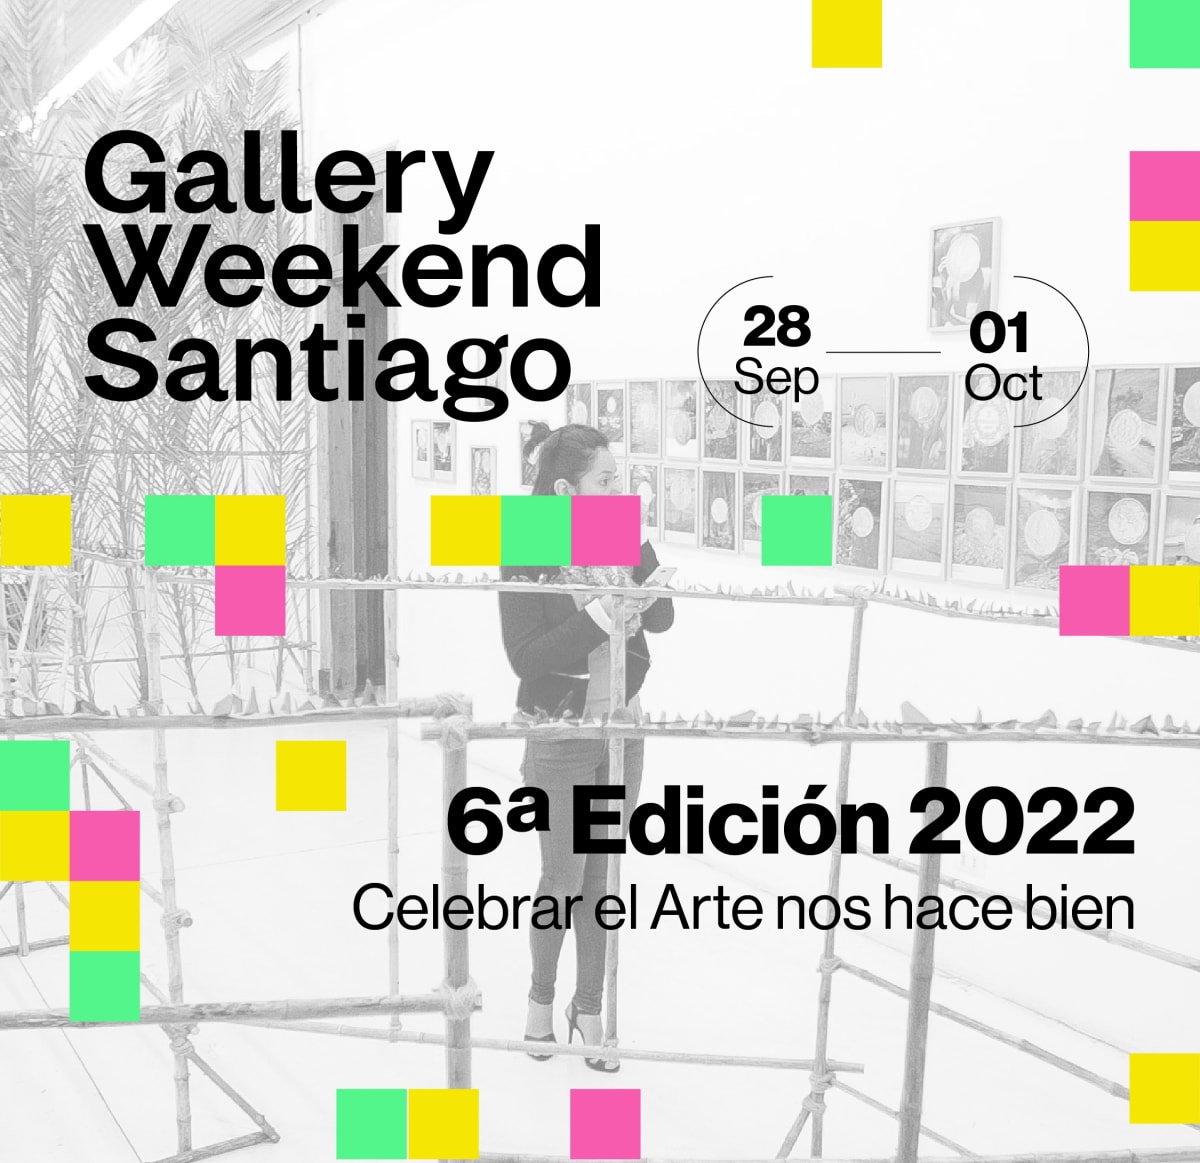 Isabel Croxatto Galería takes part in Gallery Weekend Santiago